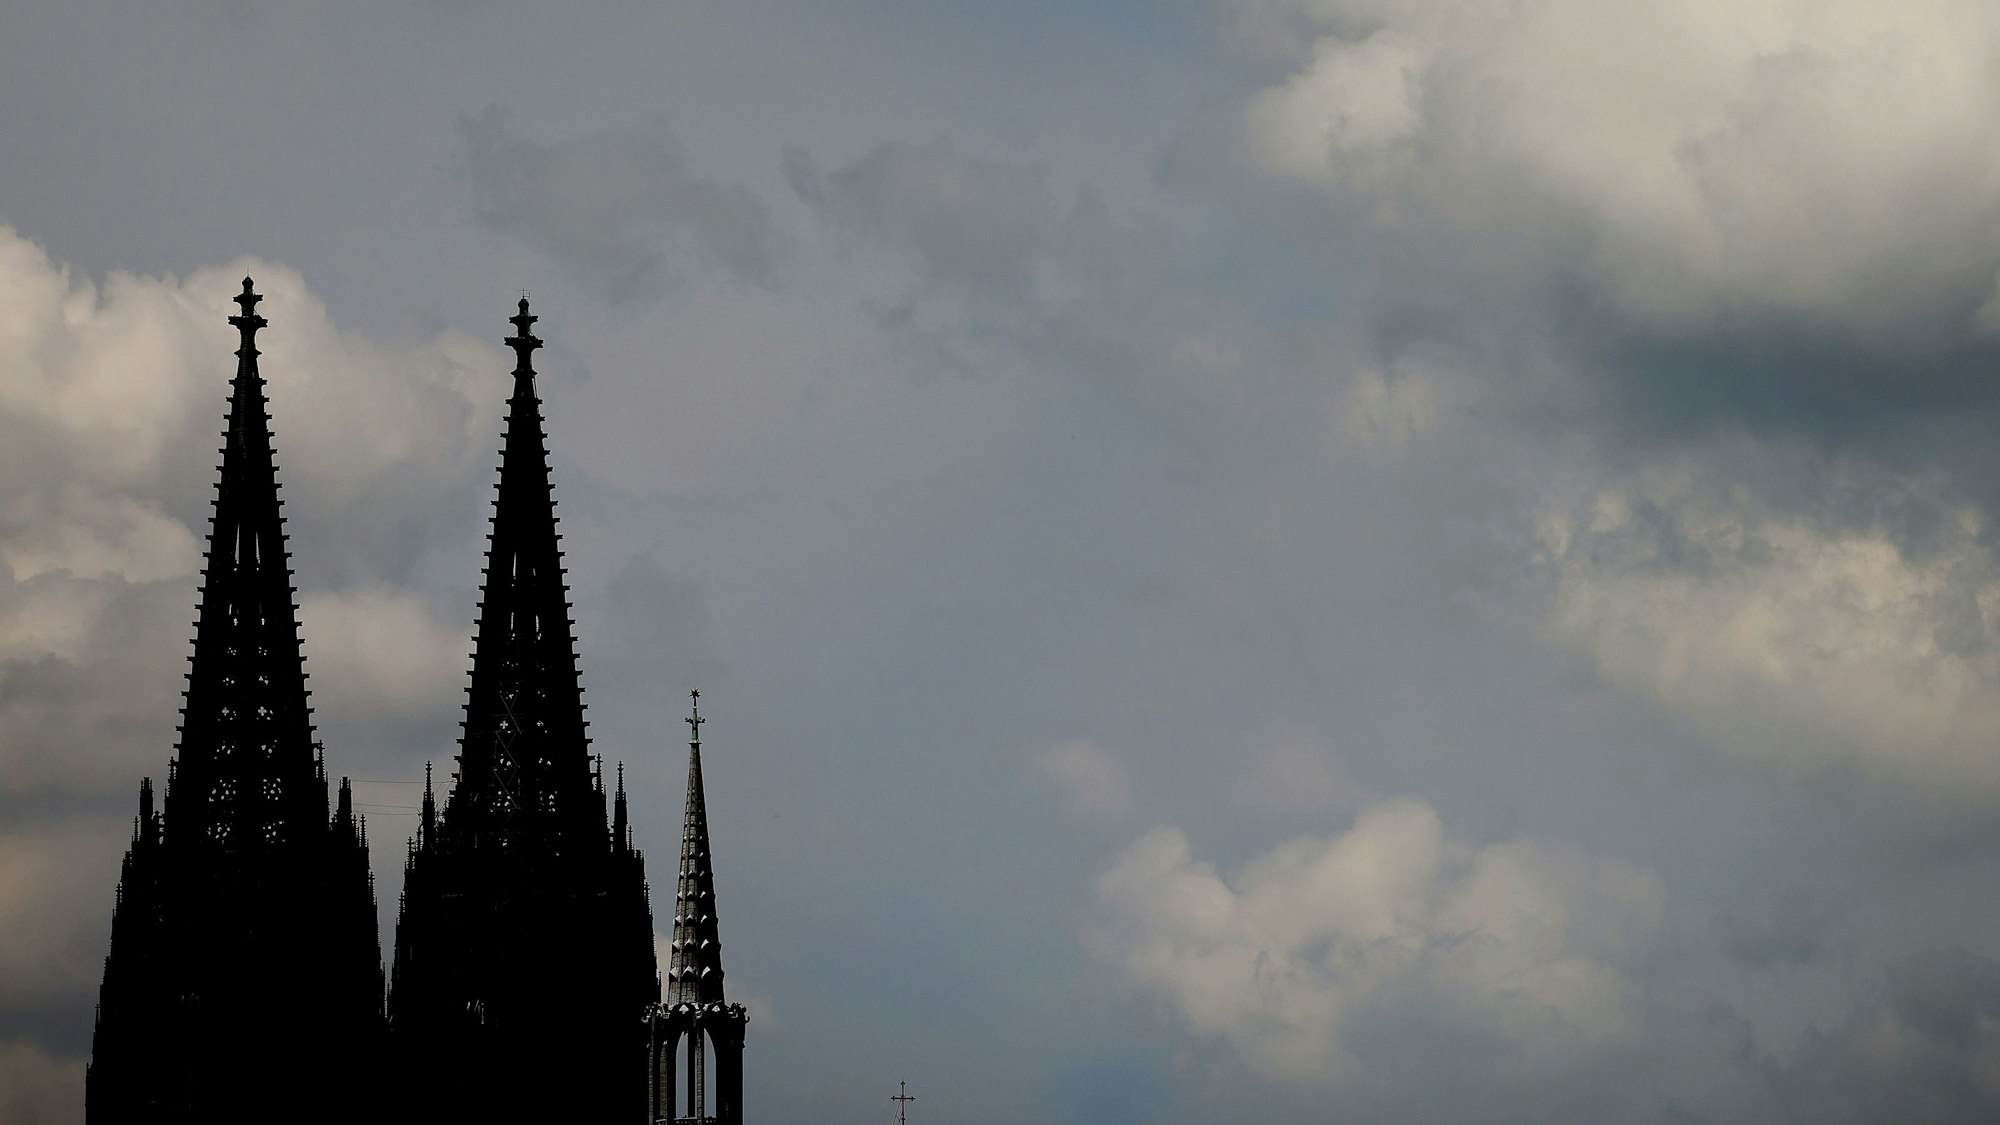 ARCHIV - 28.05.2021, Nordrhein-Westfalen, Köln: Wolken ziehen am Dom vorbei.